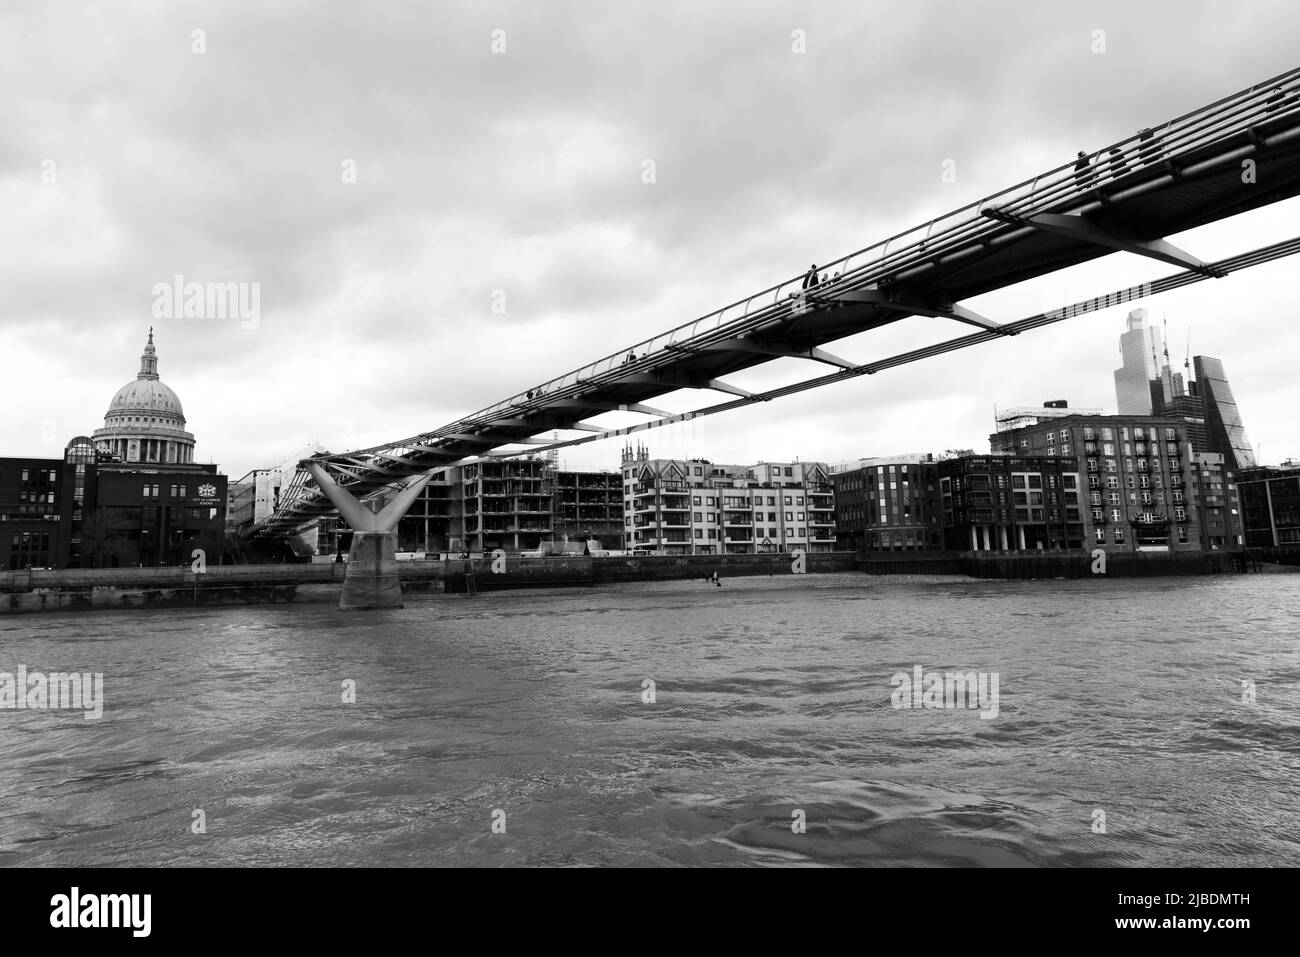 Londres, Angleterre, 5 avril 2022 - vue de dessous le pont du millénaire qui traverse la Tamise à Londres et est une attraction touristique Banque D'Images